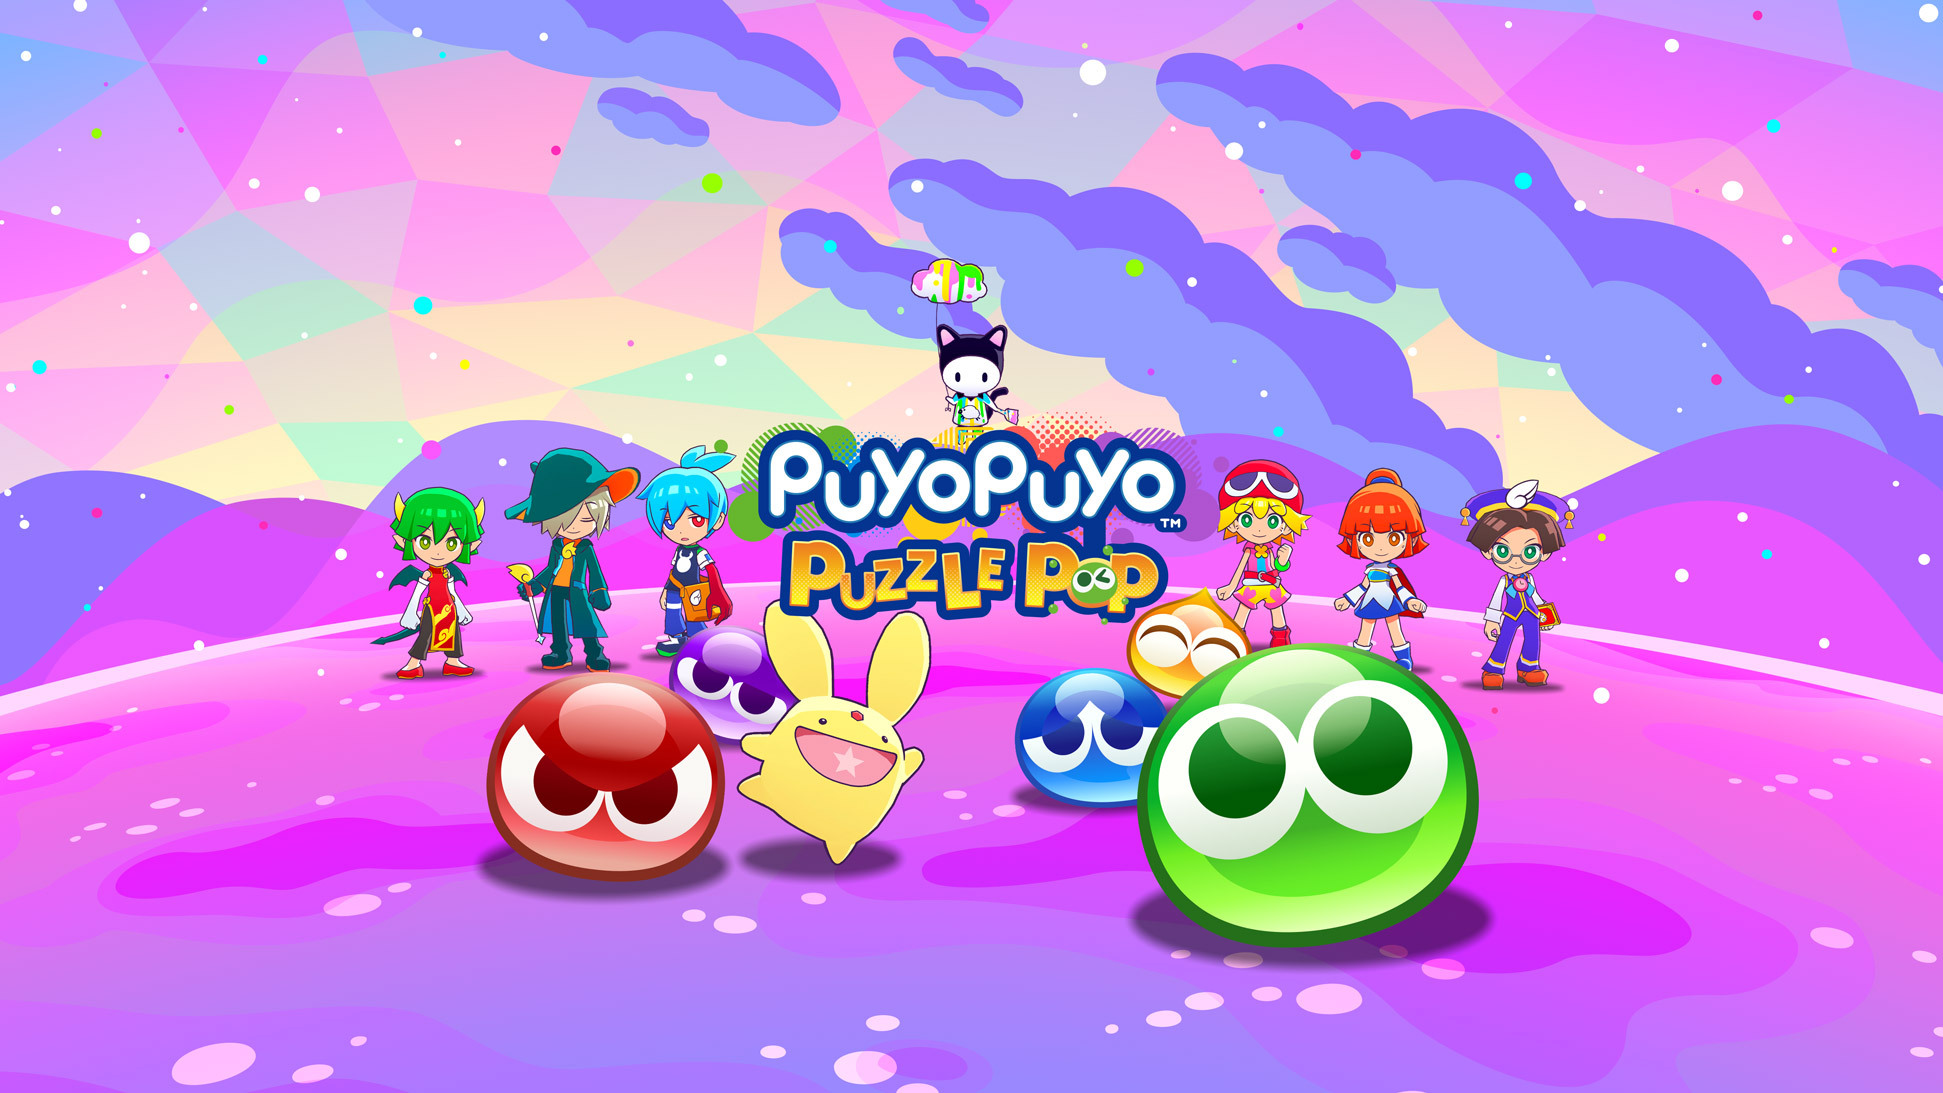 《魔法气泡》系列最新作《魔法气泡益智消消乐》公开游戏介绍PV 及游戏模式详情《Puyo Puyo Puzzle Pop》